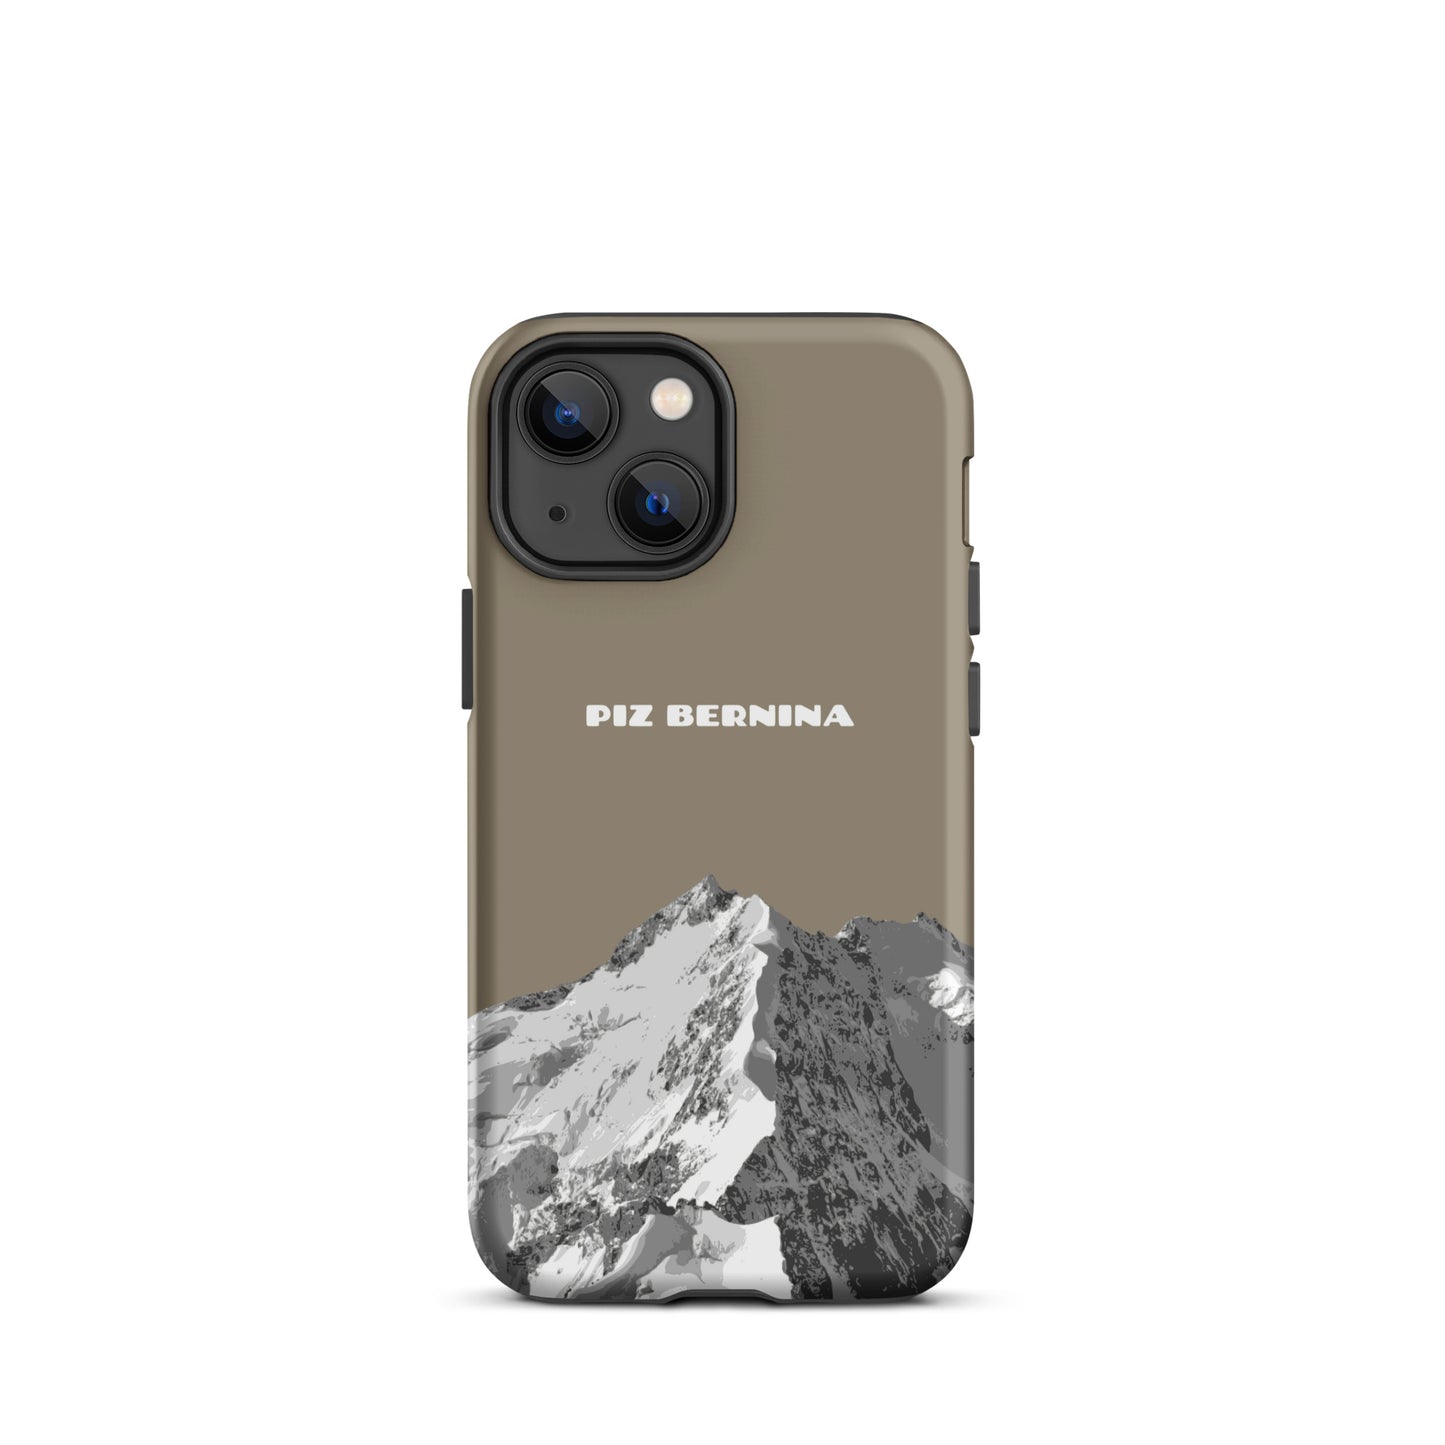 Hülle für das iPhone 13 Mini von Apple in der Farbe Graubraun, dass den Piz Bernina in Graubünden zeigt.